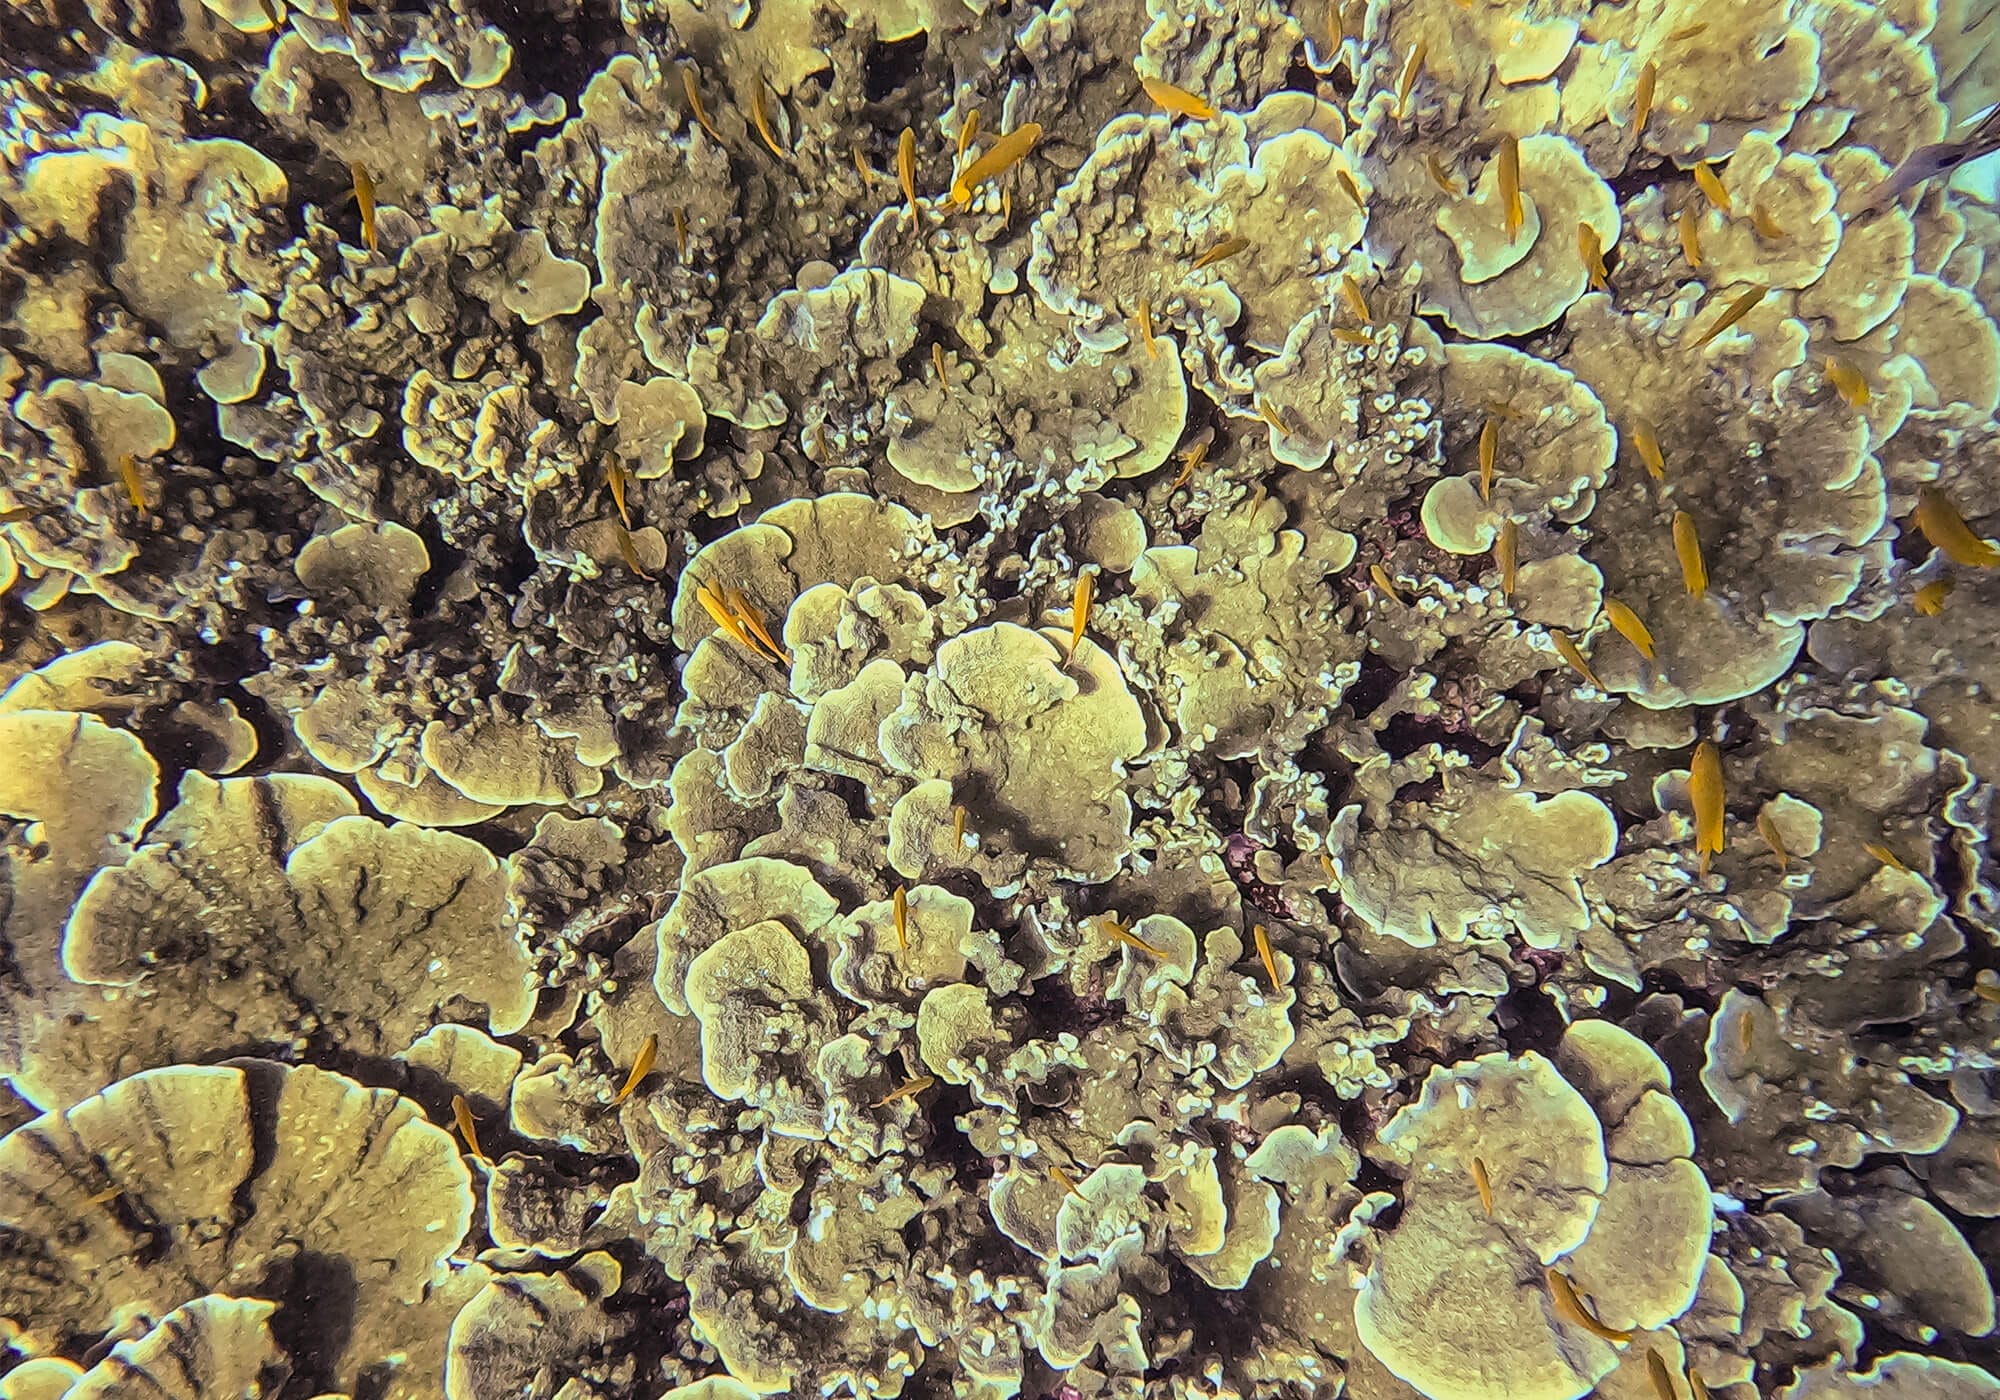 Lettuce Coral